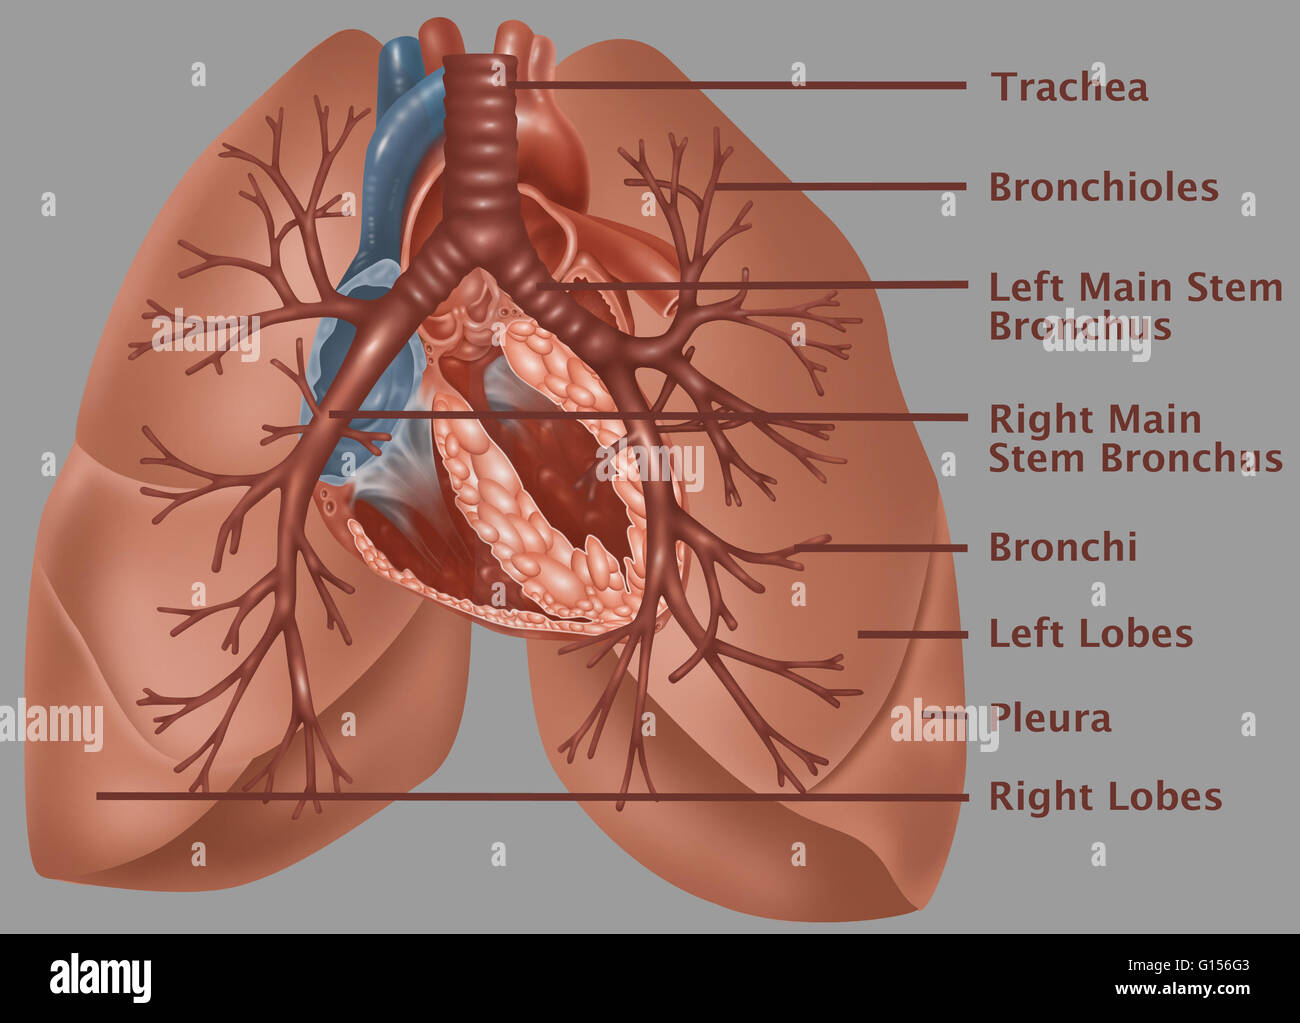 Anatomische Abbildung der Lunge, mit (von oben nach unten) die ...